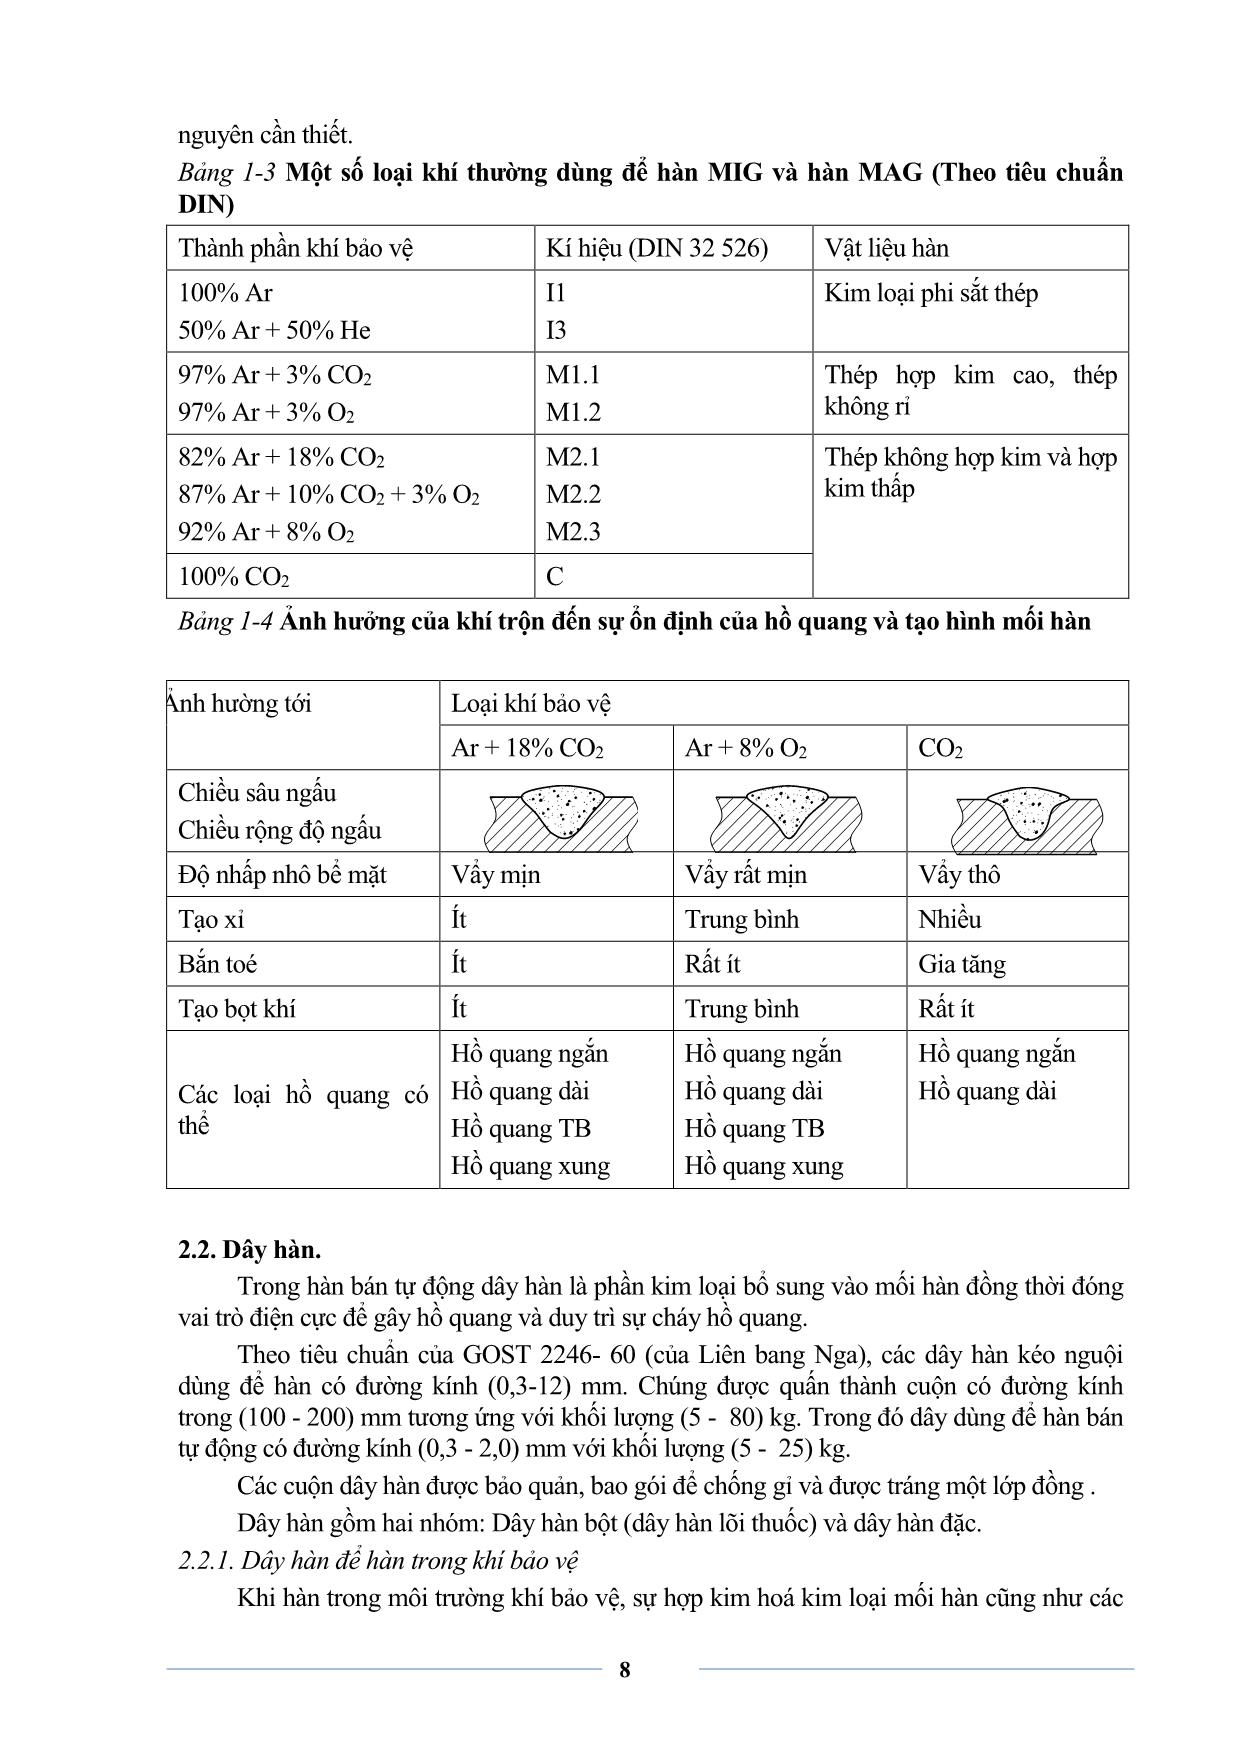 Giáo trình sơ cấp Hàn MIG-MAG trang 10